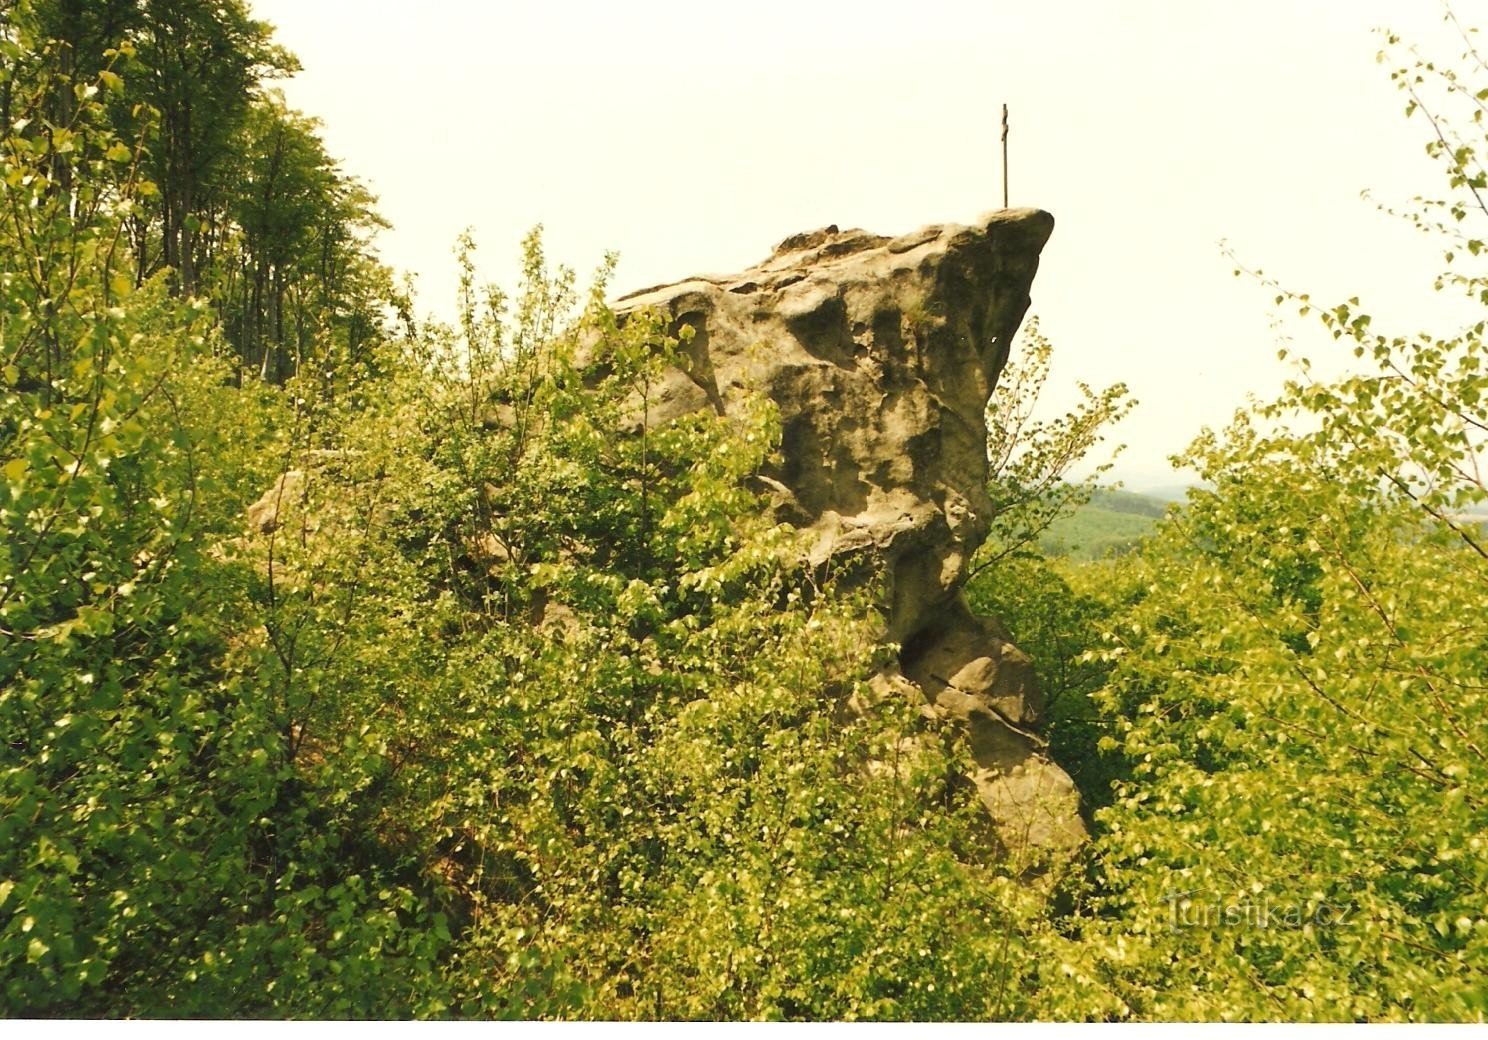 Propovjedaonica - gornji dio stijene s križem 1998